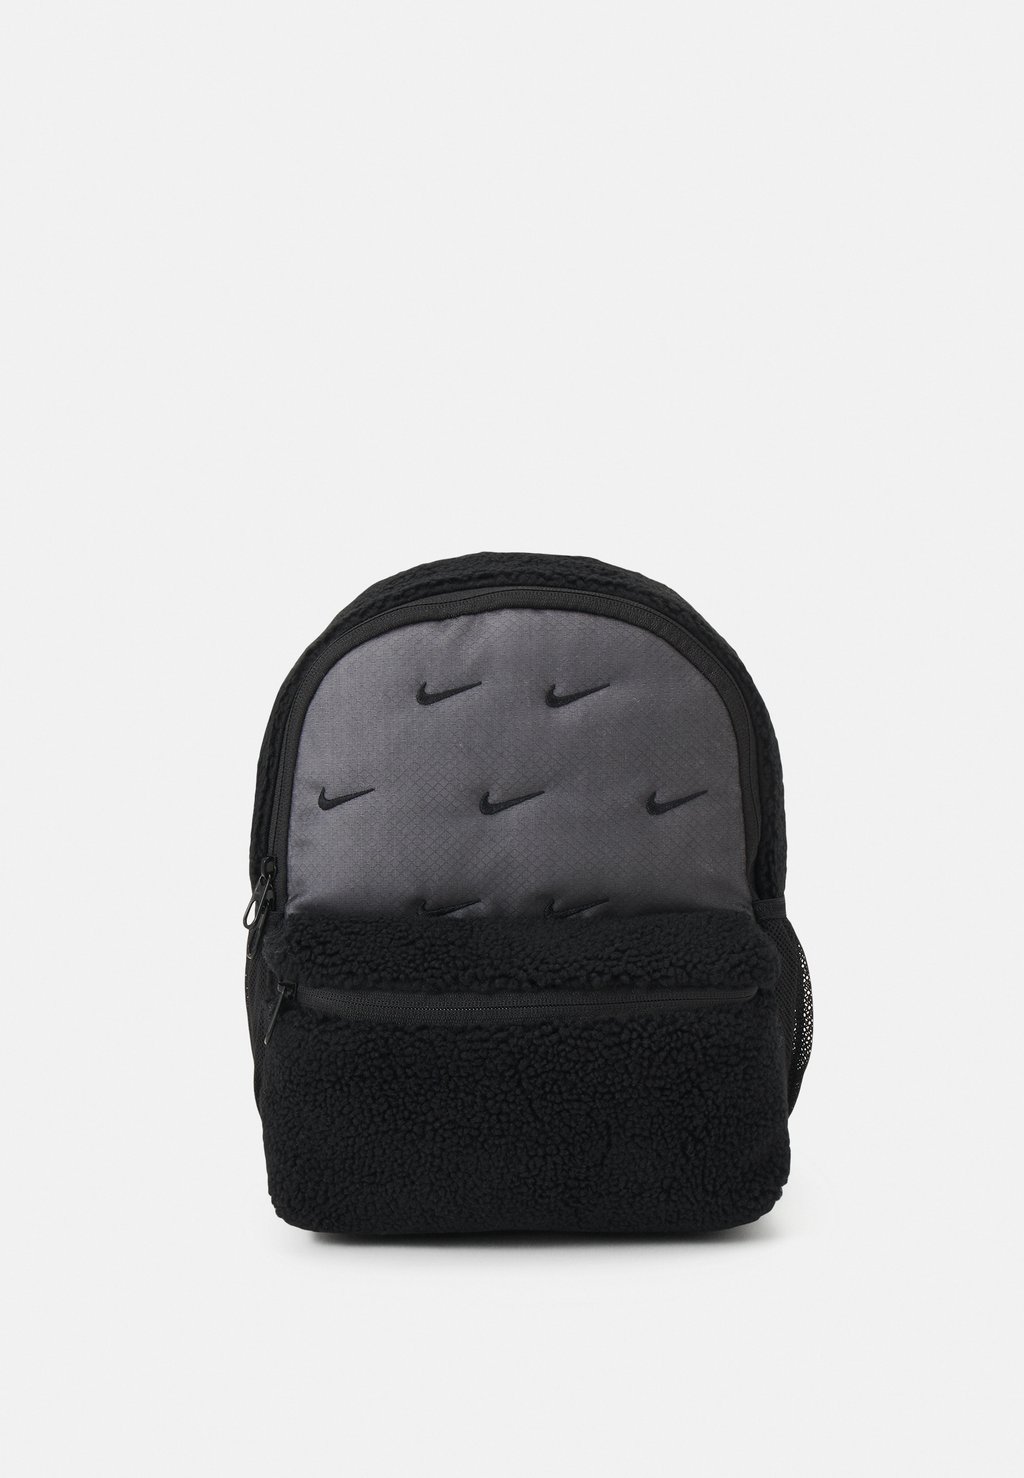 Рюкзак Mini Unisex Nike, цвет black/black/(black) цена и фото